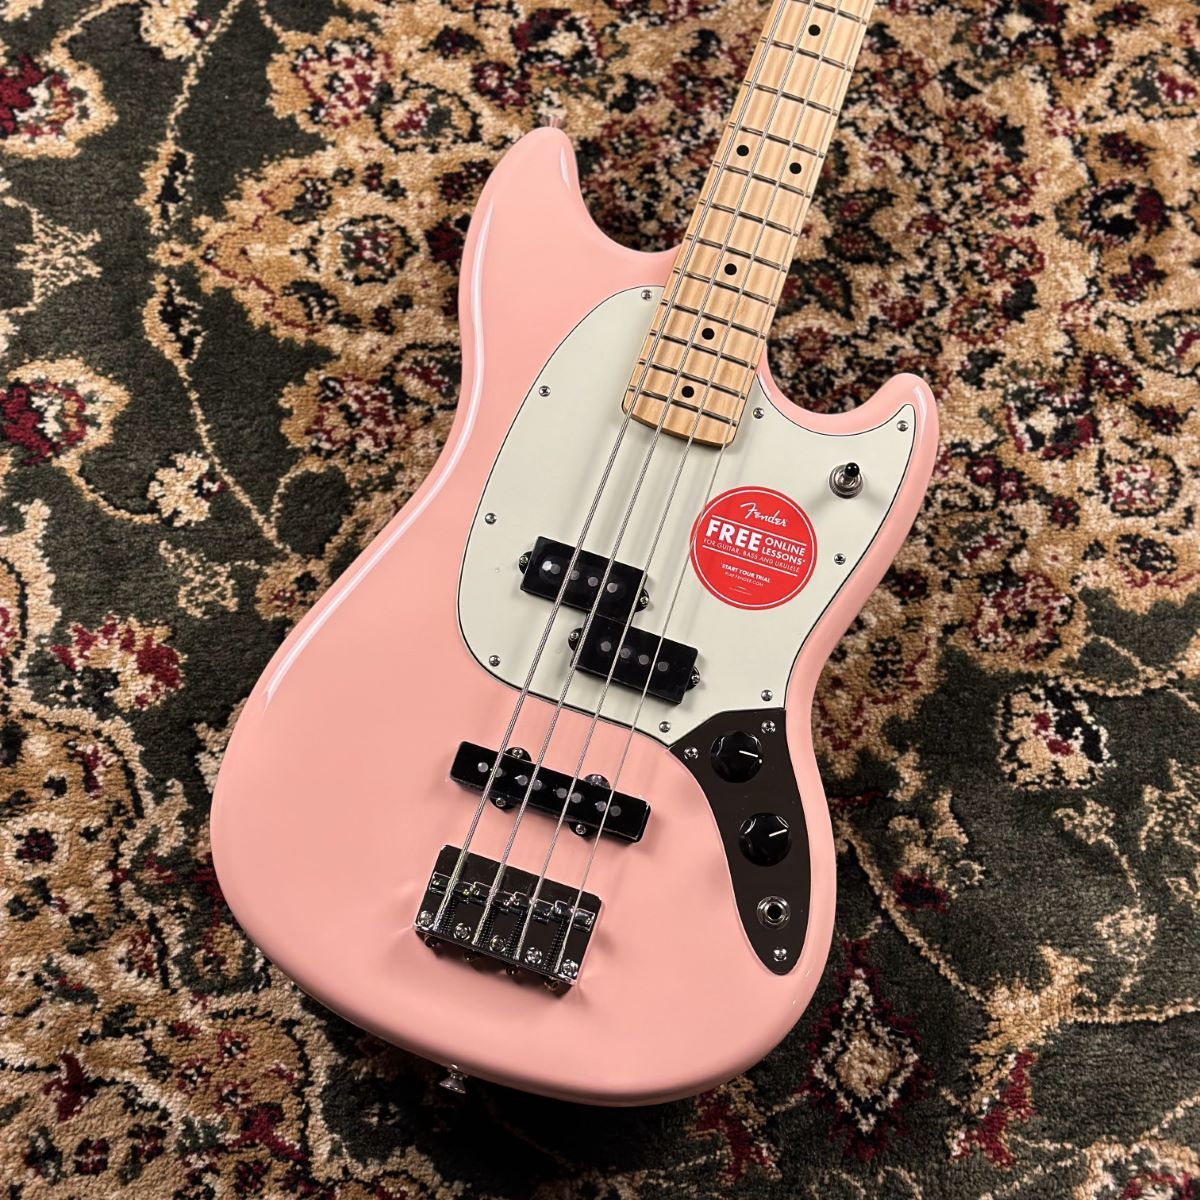 CONTENTSFender Limited Edition MUSTANG BASS PJ Maple Fingerboard Shell Pinkこの商品について技術者による安心のアフターフォローギターアドバイザーが楽器選びをサポート最新情報を手に入れよう音楽をもっと楽しみたい方は音楽教室がおス […]